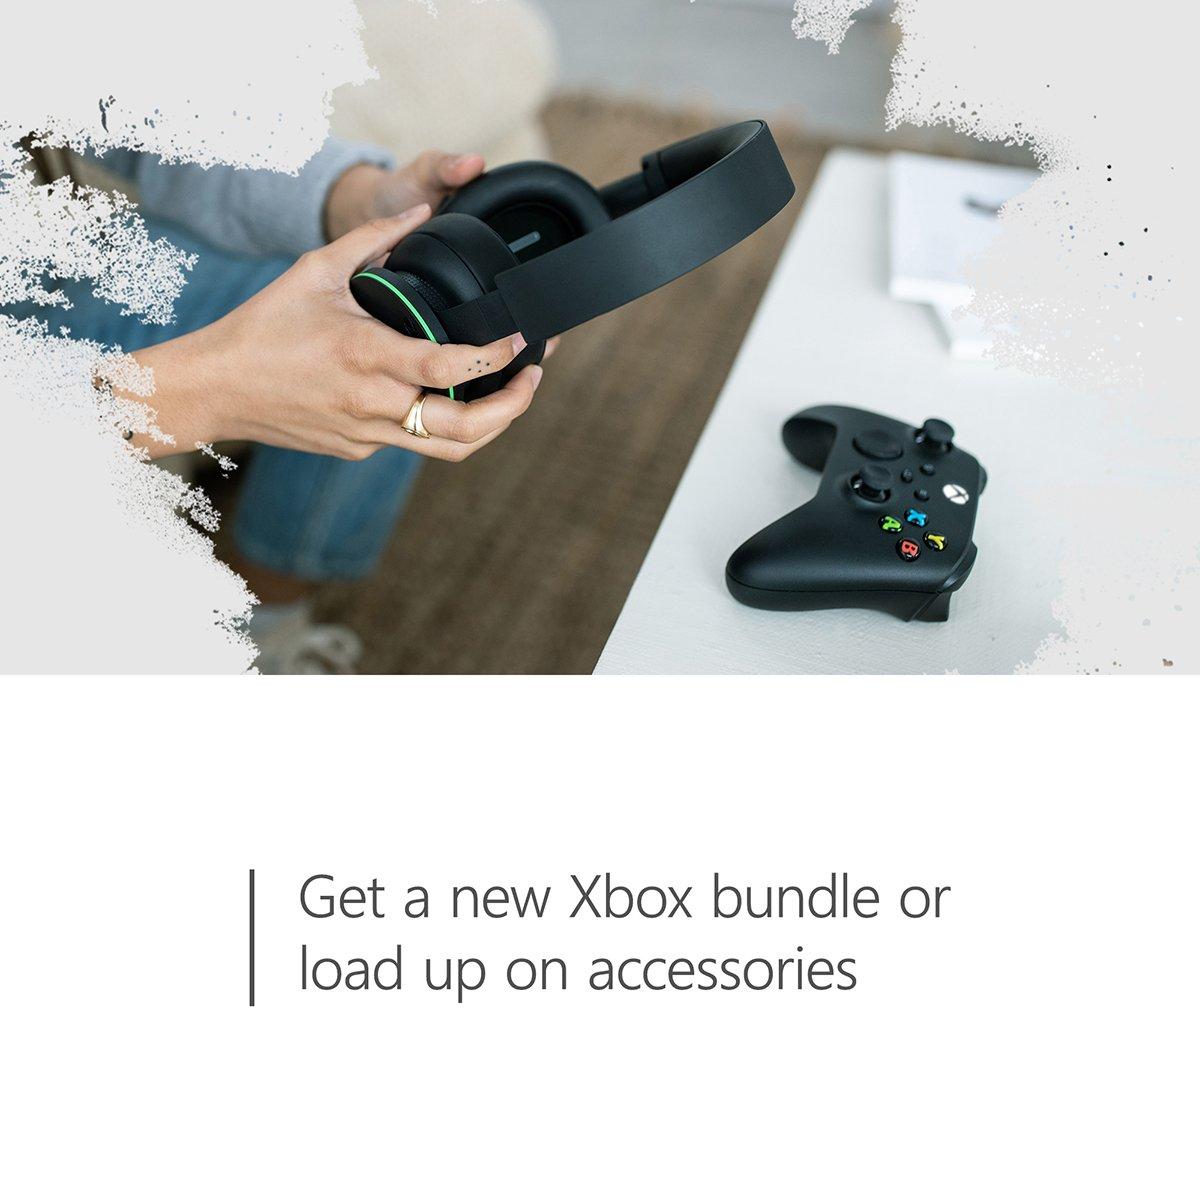 $20 Xbox Gift Card [Digital Code]